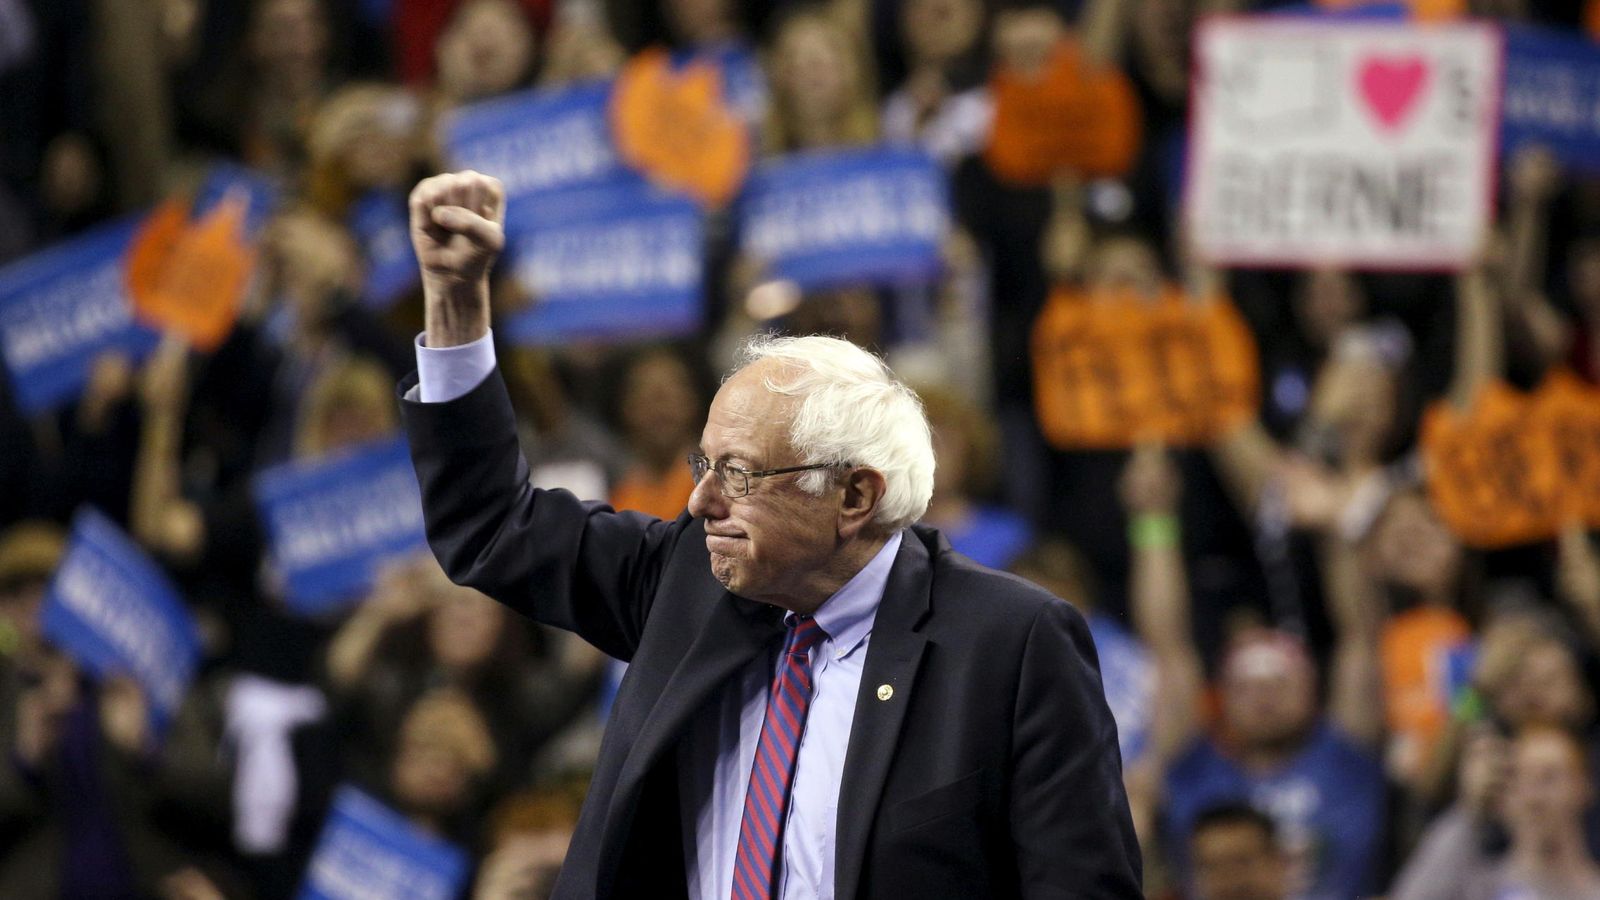 Foto: El candidato a la nominación demócrata Bernie Sanders durante un acto de campaña en Seattle, Washington (Reuters).